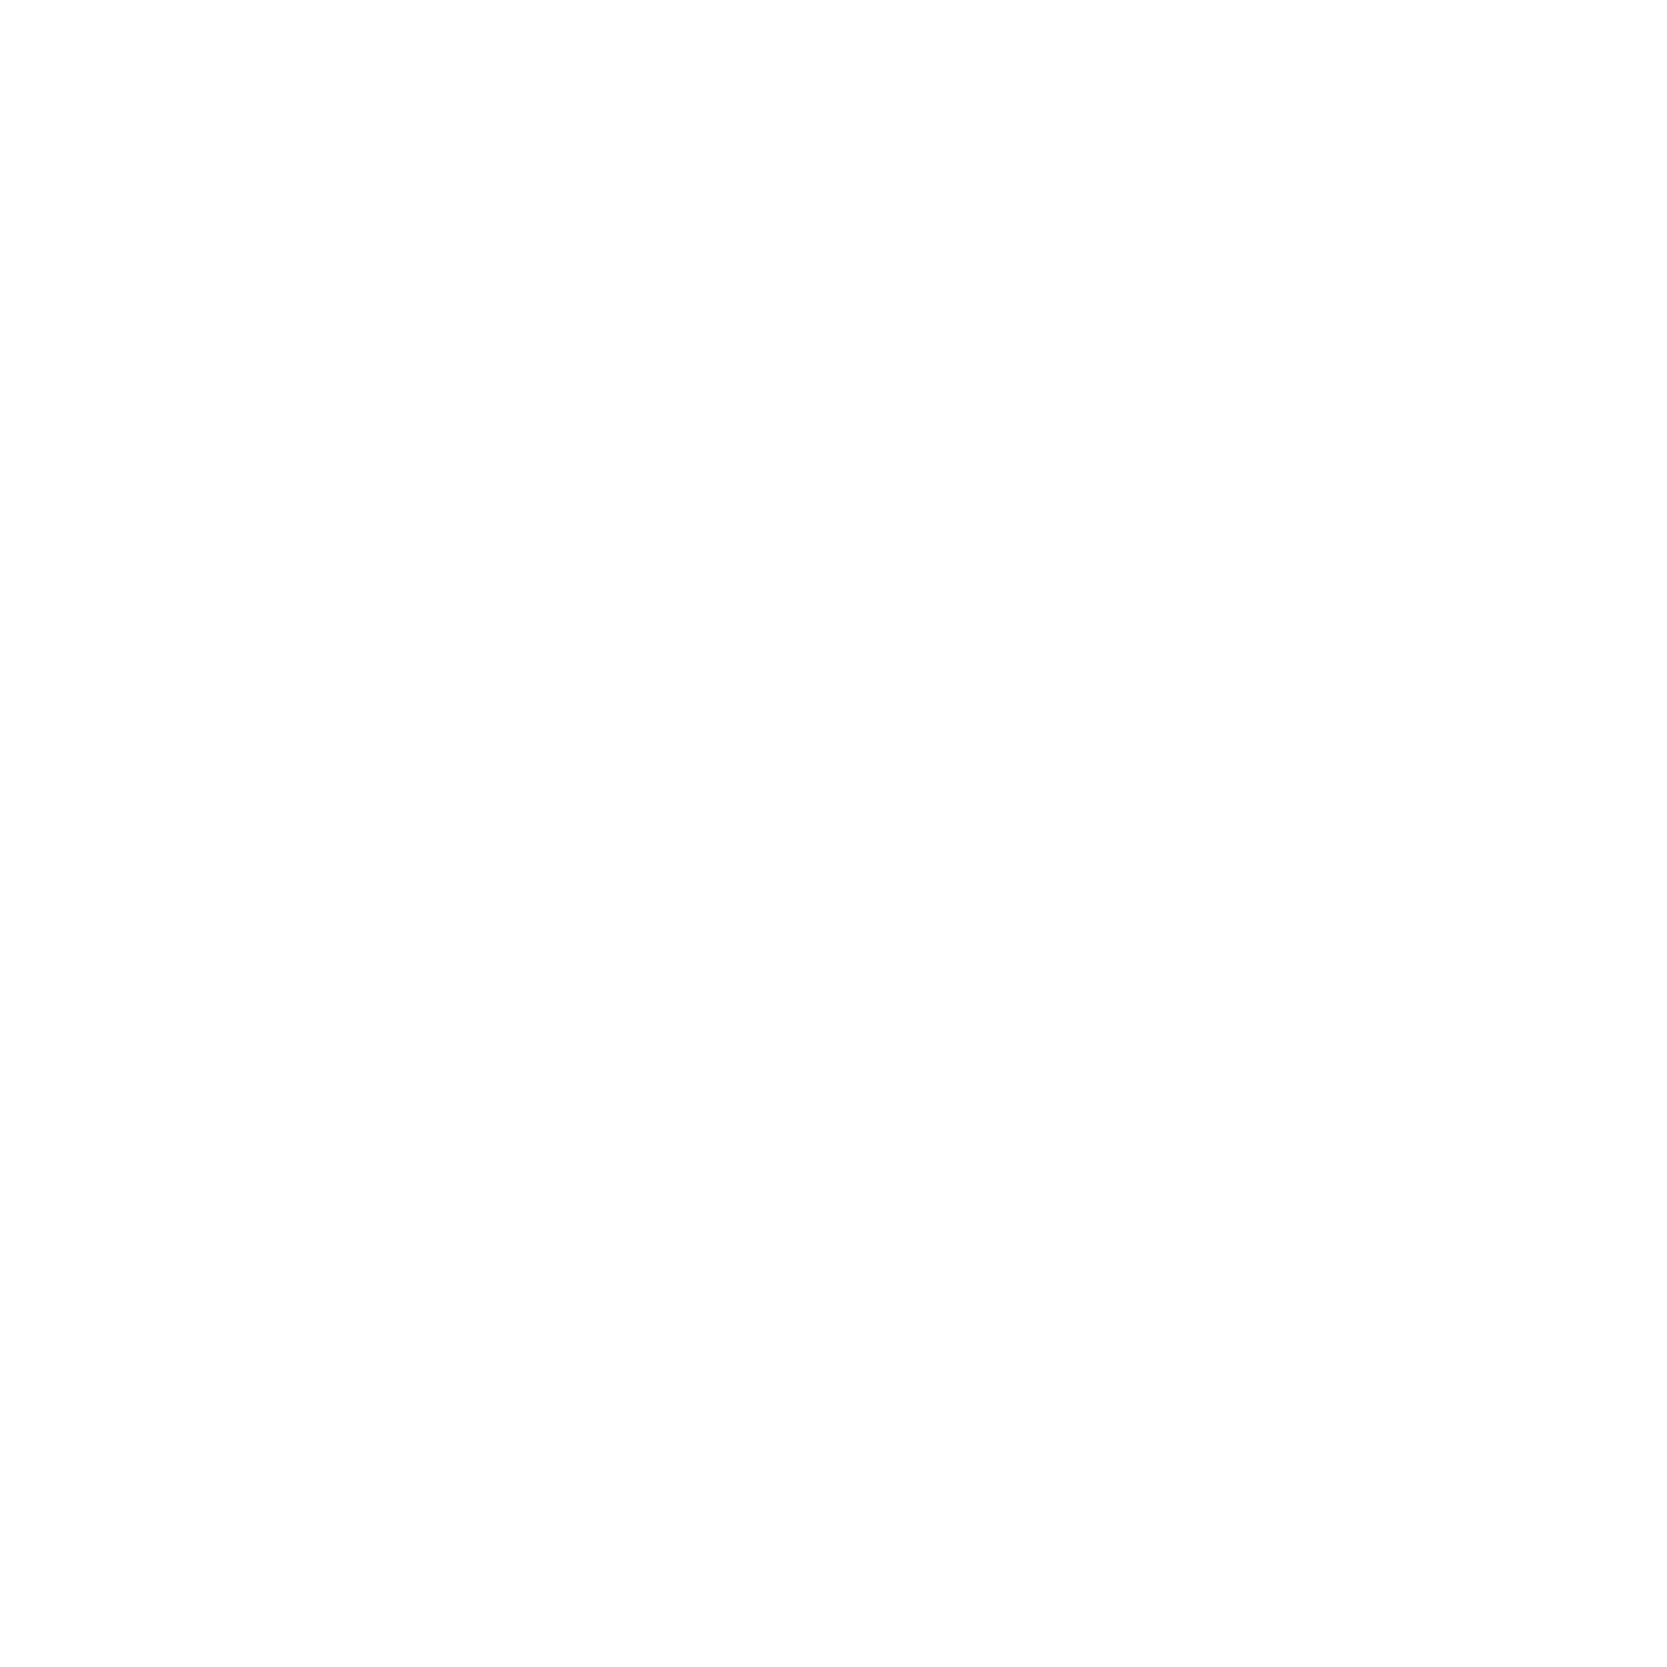 3 C R D S C 